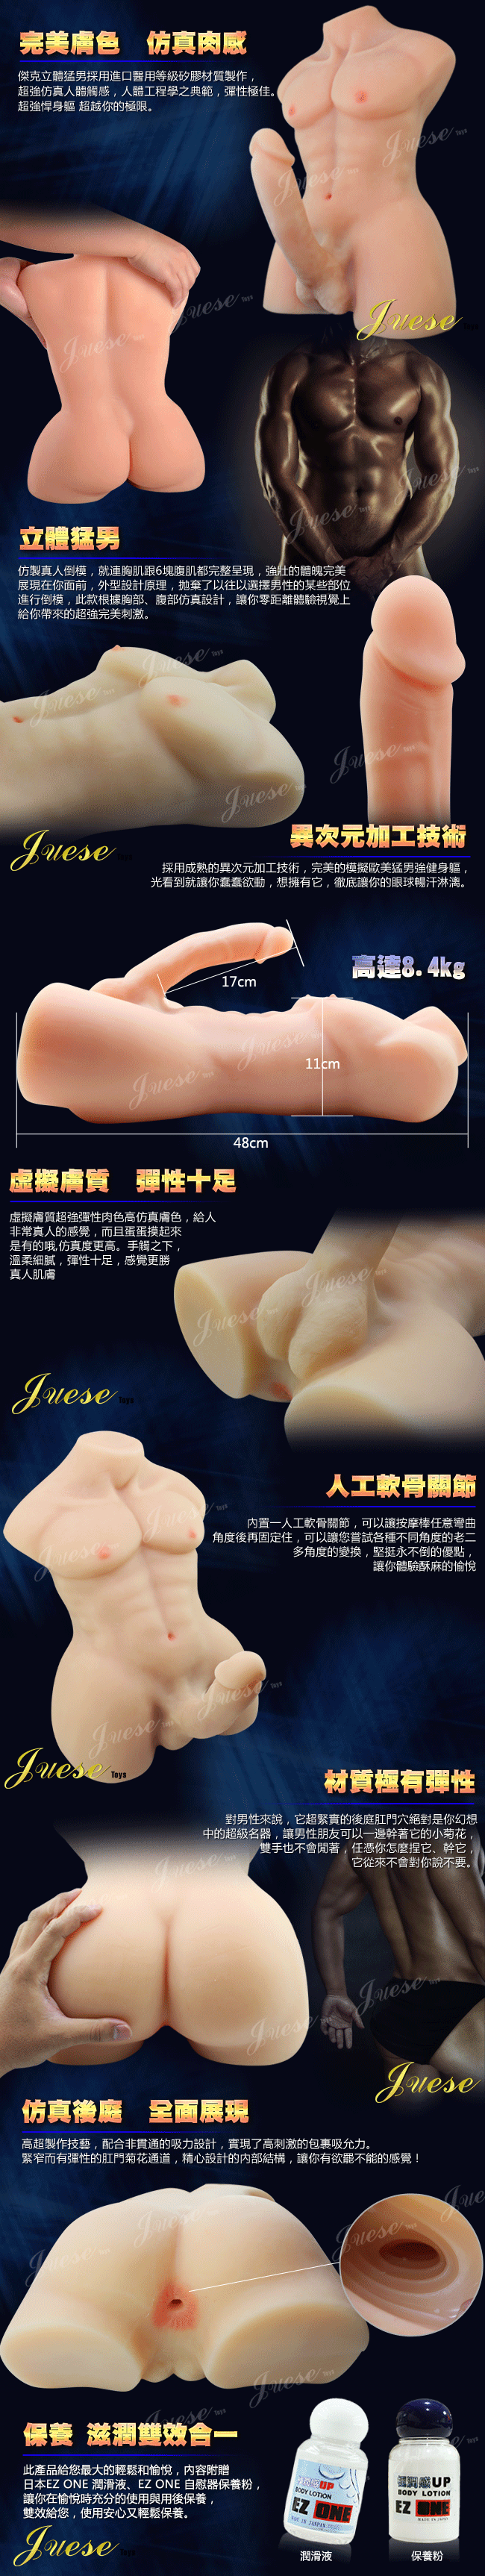 香港Juese-傑克3D立體猛男巨屌自慰器-重量級8.4Kg